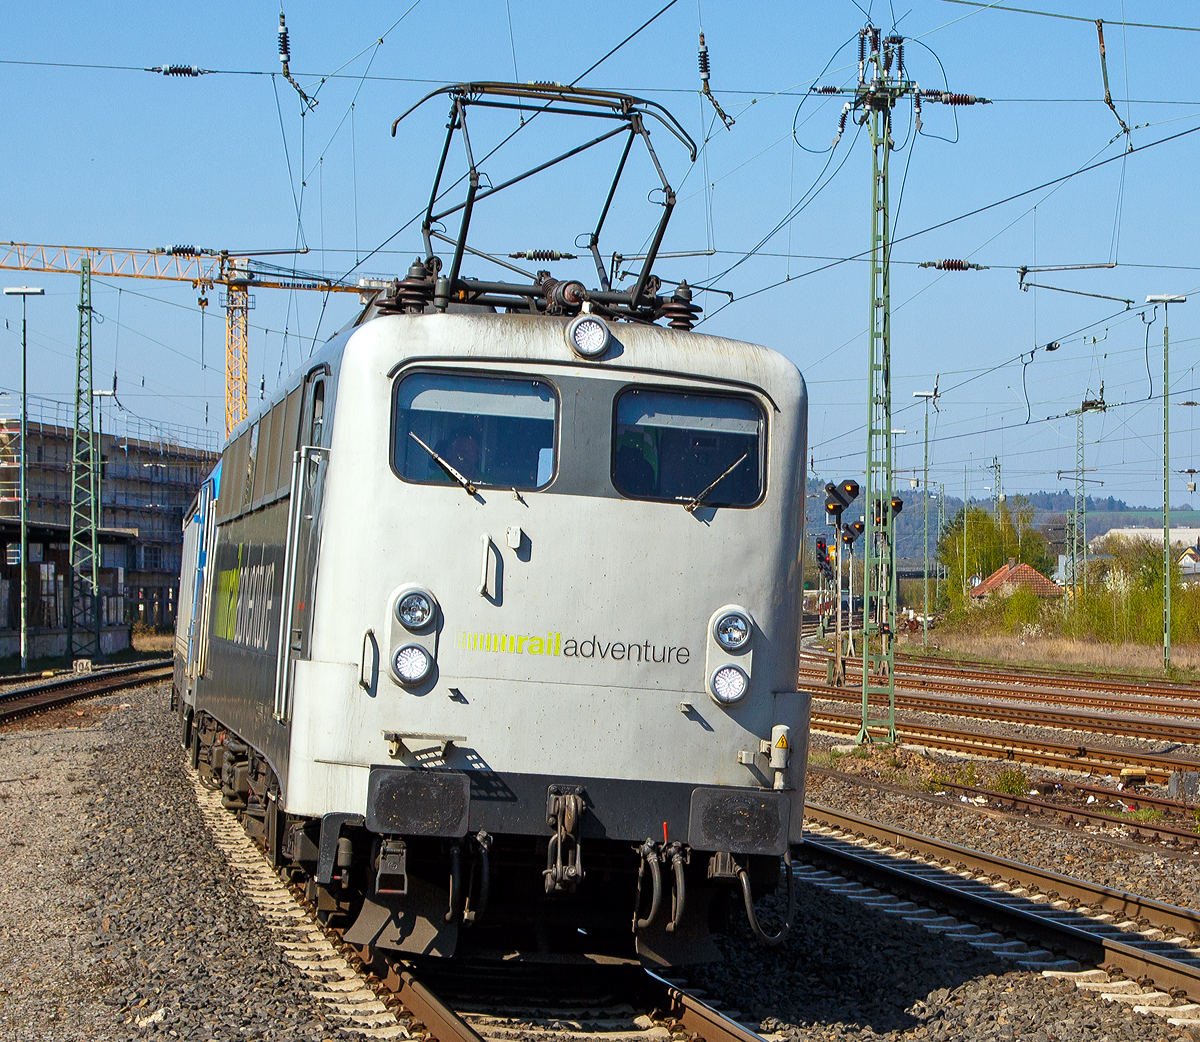 
Die 139 558-1  Albert Jonker  (91 80 6139 558-1 D-RADVE) der RailAdventure GmbH (München) fährt am 09.04.2017, mit der 187 002-1 (eine TRAXX F160 AC3 LM) am Haken, durch den Bahnhof Marburg (Lahn) in Richtung Gießen bzw. Fankfurt am Main.
 
Die E 40.11 wurde 1964 von Krauss-Maffei in München unter der Fabriknummer 19072 gebaut, der elektische Teil wurde von den Siemens-Schuckert-Werke (SSW) gefertigt. Die Auslieferungen erfolgte im Januar 1965 an die Deutsche Bundesbahn (DB) als E 40 1558, zum 01.01.1968 wurde sie dann in DB 139 558-1 umgezeichnet. Im Jahr 2009 wurde sie (91 80 6139 558-1 D-DB) von der DB Schenker Rail Deutschland AG z-gestellt und im November 2011 an die RailAdventure verkauft. 
